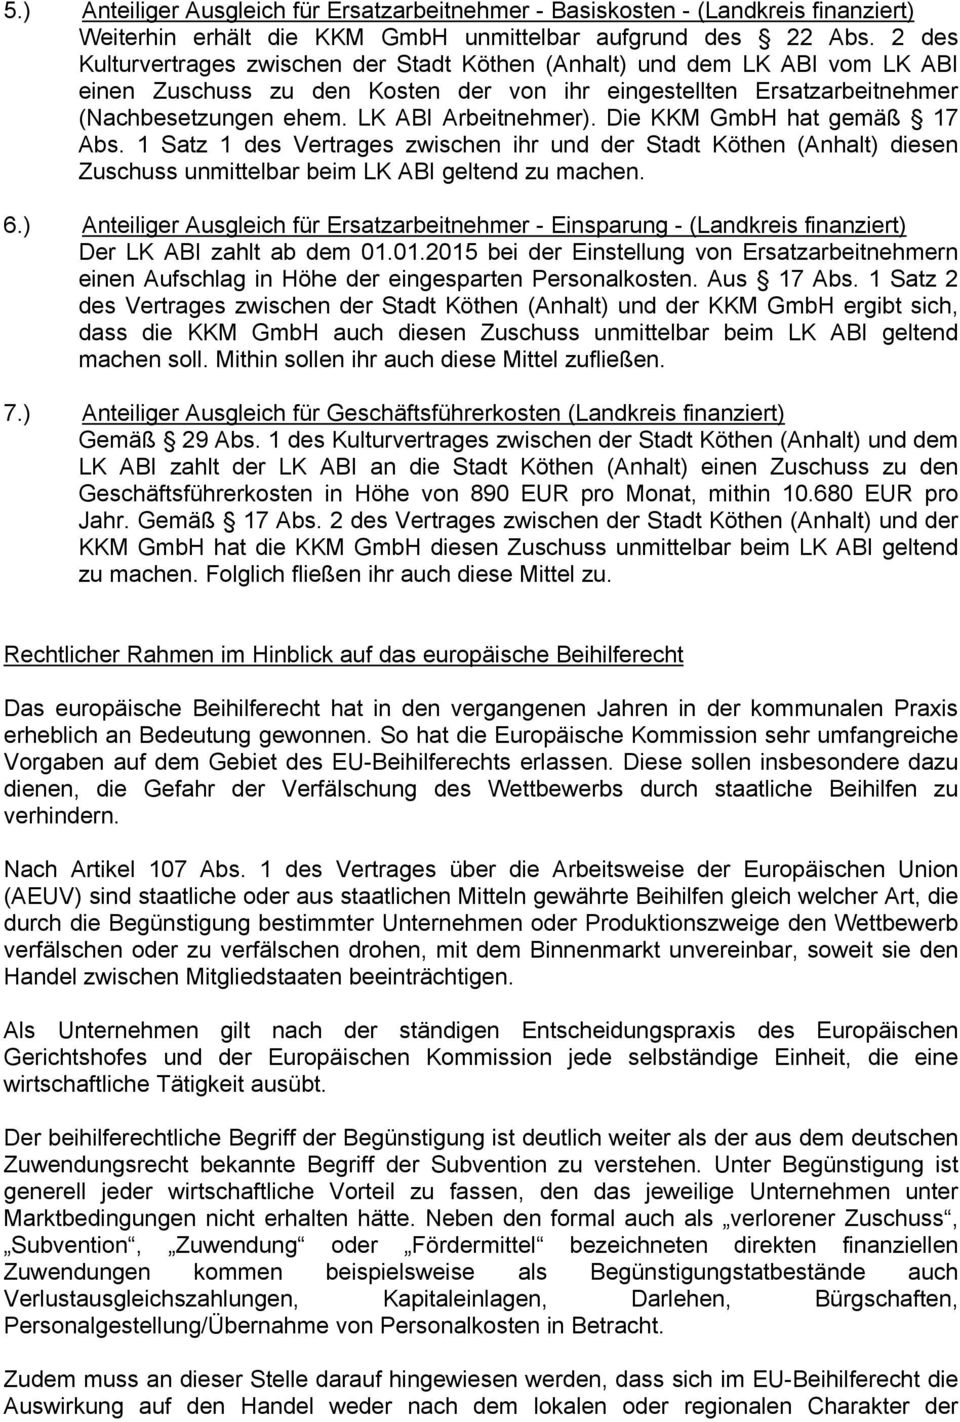 LK ABI Arbeitnehmer). Die KKM GmbH hat gemäß 17 Abs. 1 Satz 1 des Vertrages zwischen ihr und der Stadt Köthen (Anhalt) diesen Zuschuss unmittelbar beim LK ABI geltend zu machen. 6.